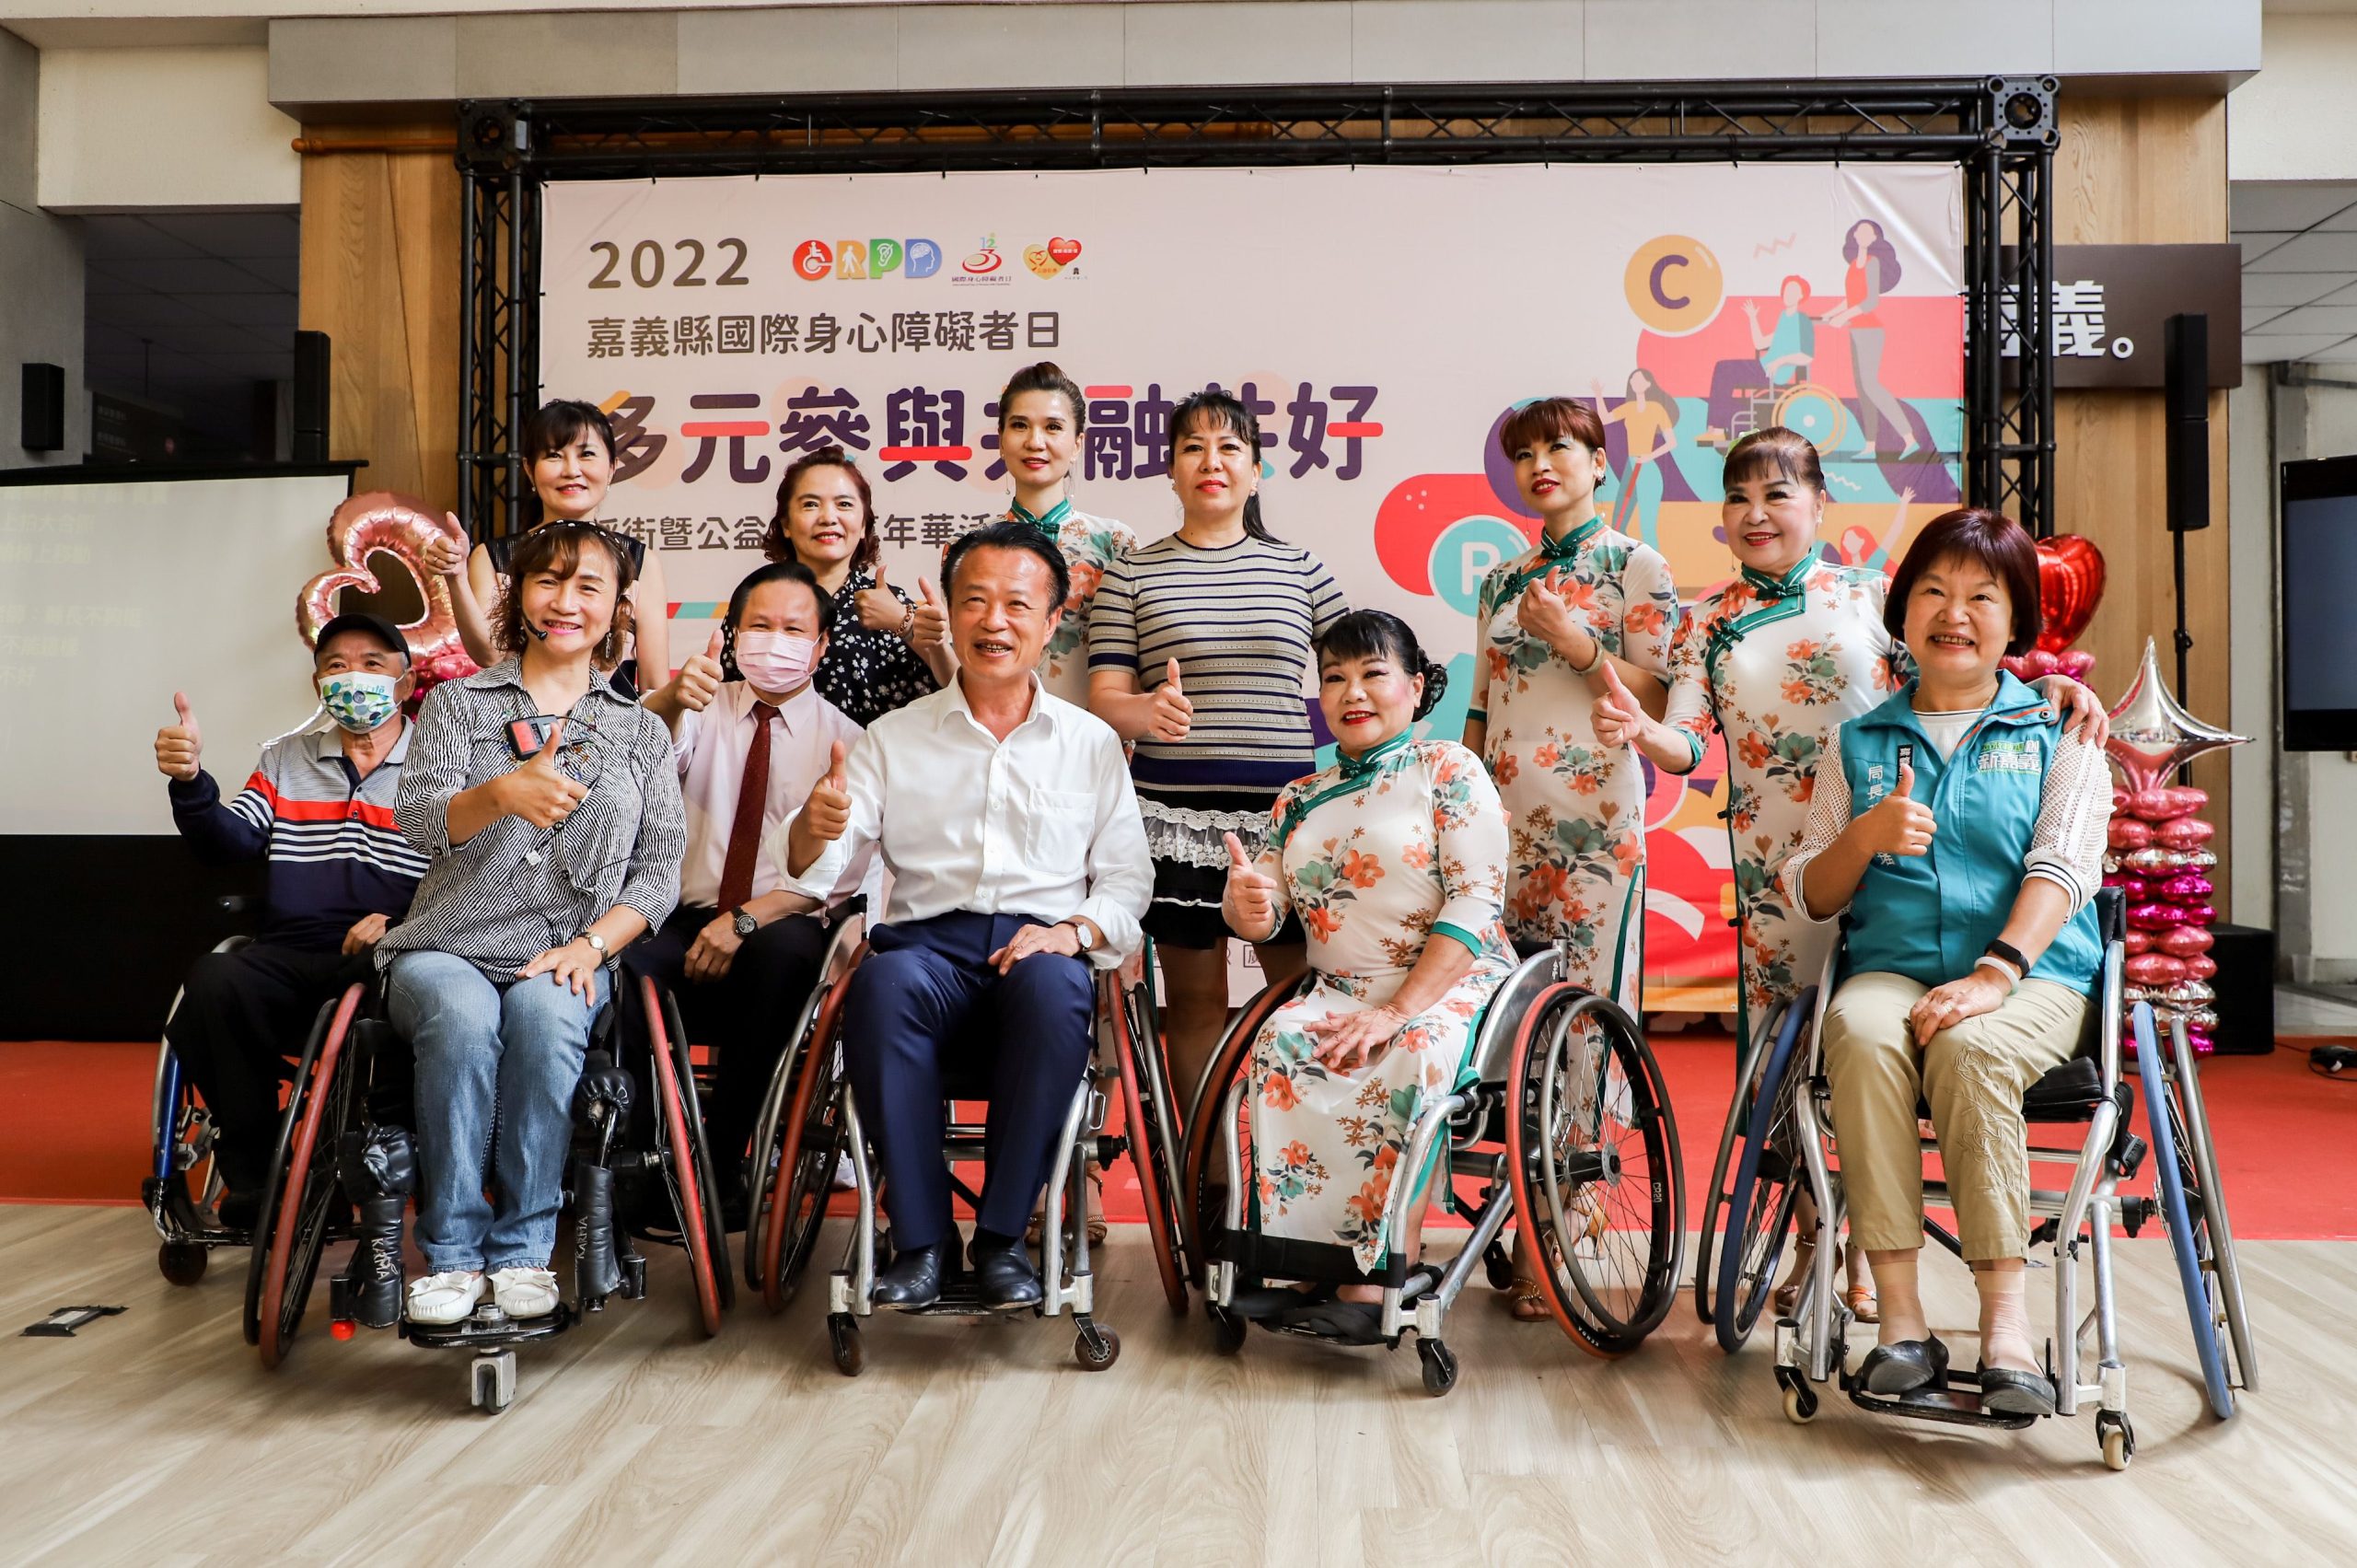 2022國際身障踩街嘉年華  29日布袋歡樂舉行